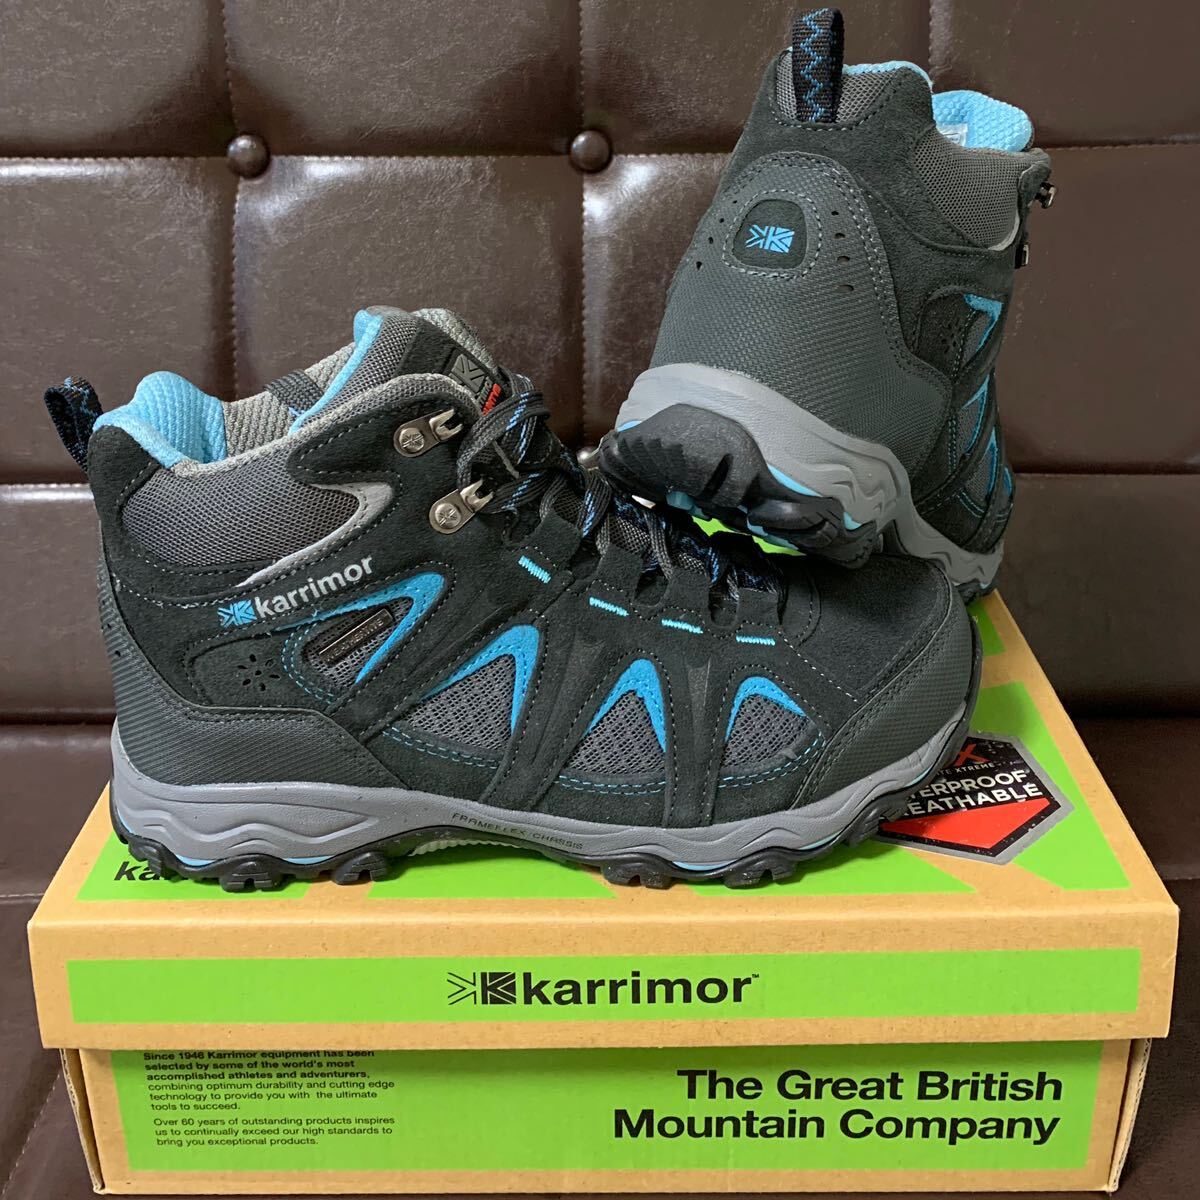  new goods!Karrimor Karrimor Mount Mid Ladies8 original leather waterproof trekking shoes 24.5cm gray / blue WEATHERTITE waterproof DYNAGRIP sole 